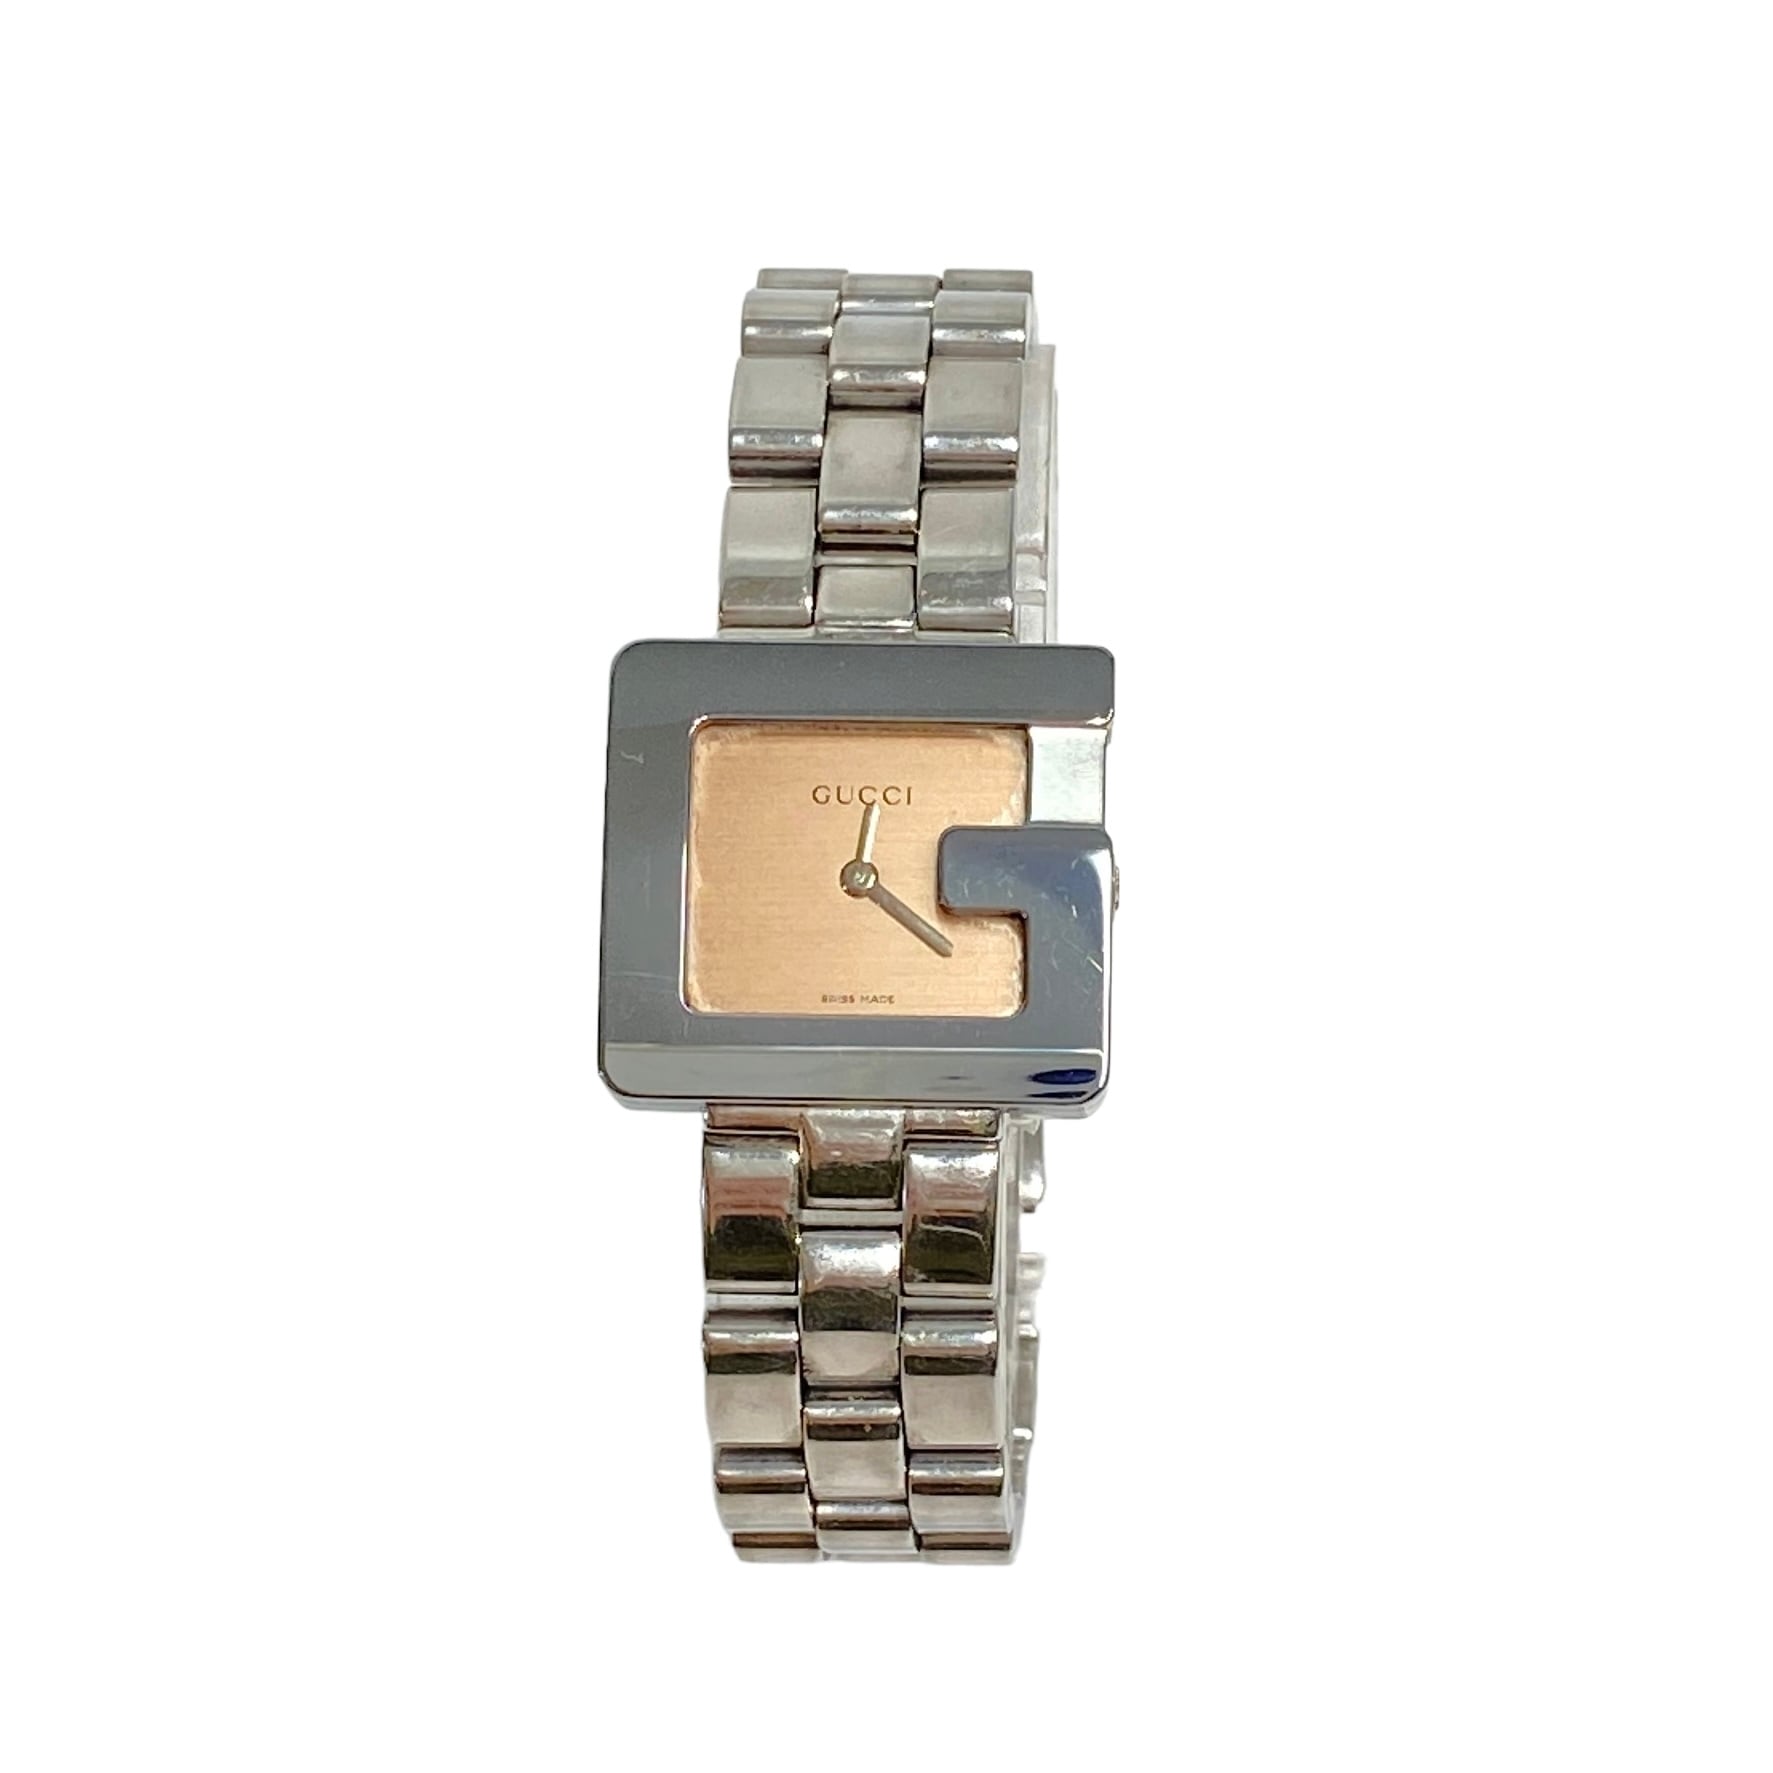 GUCCI グッチ 3600L クォーツ SS ピンク文字盤 腕時計 レディース 9206